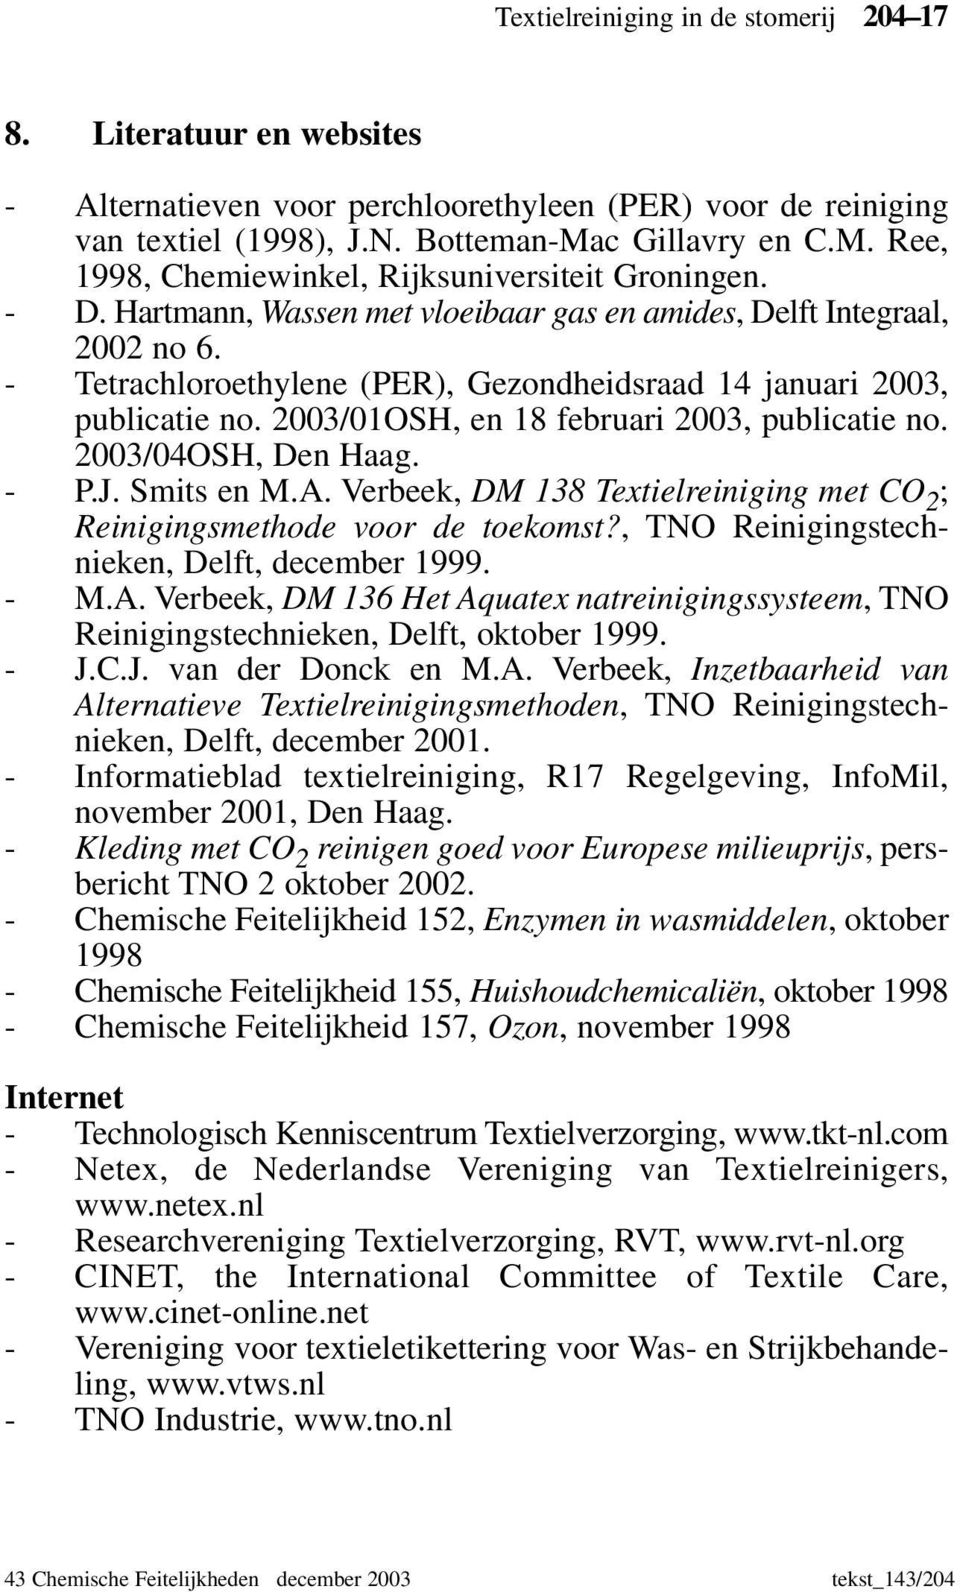 - Tetrachloroethylene (PER), Gezondheidsraad 14 januari 2003, publicatie no. 2003/01OSH, en 18 februari 2003, publicatie no. 2003/04OSH, Den Haag. - P.J. Smits en M.A.